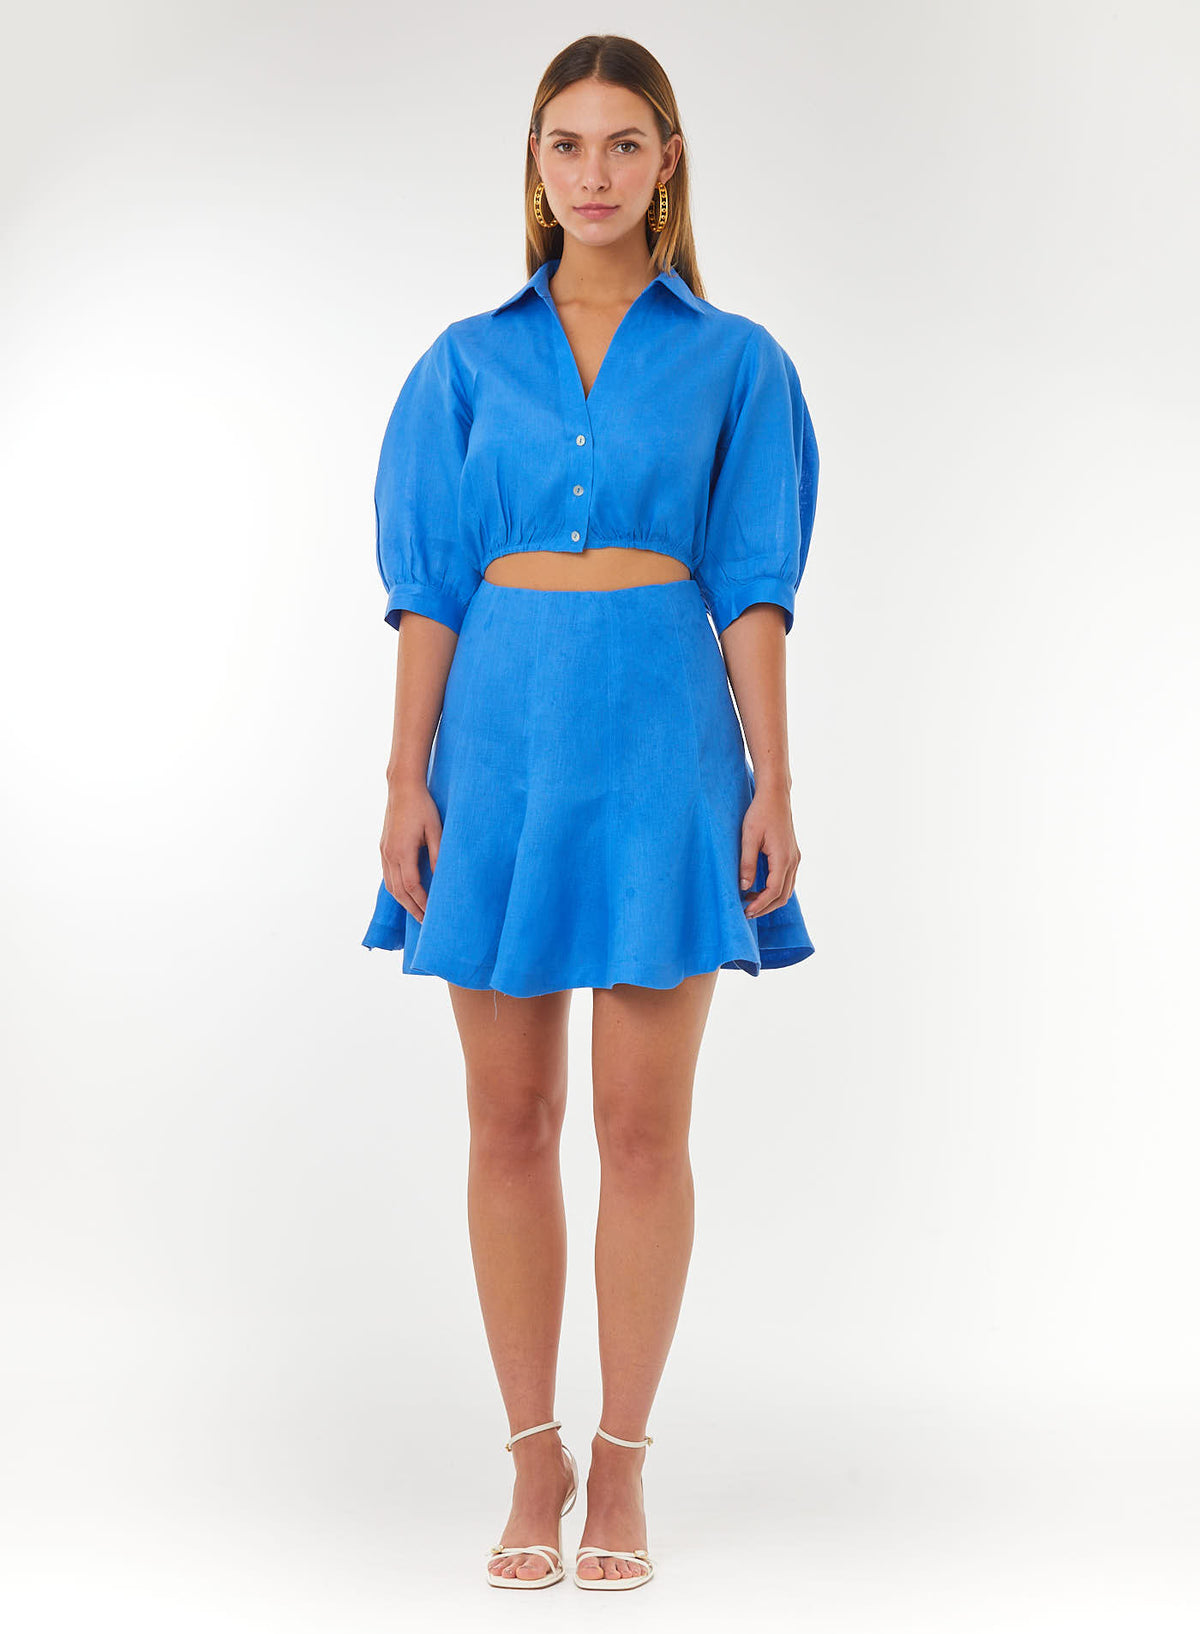 The Color Wear | Tienda Virtual | vestido | Vestido Leyenda